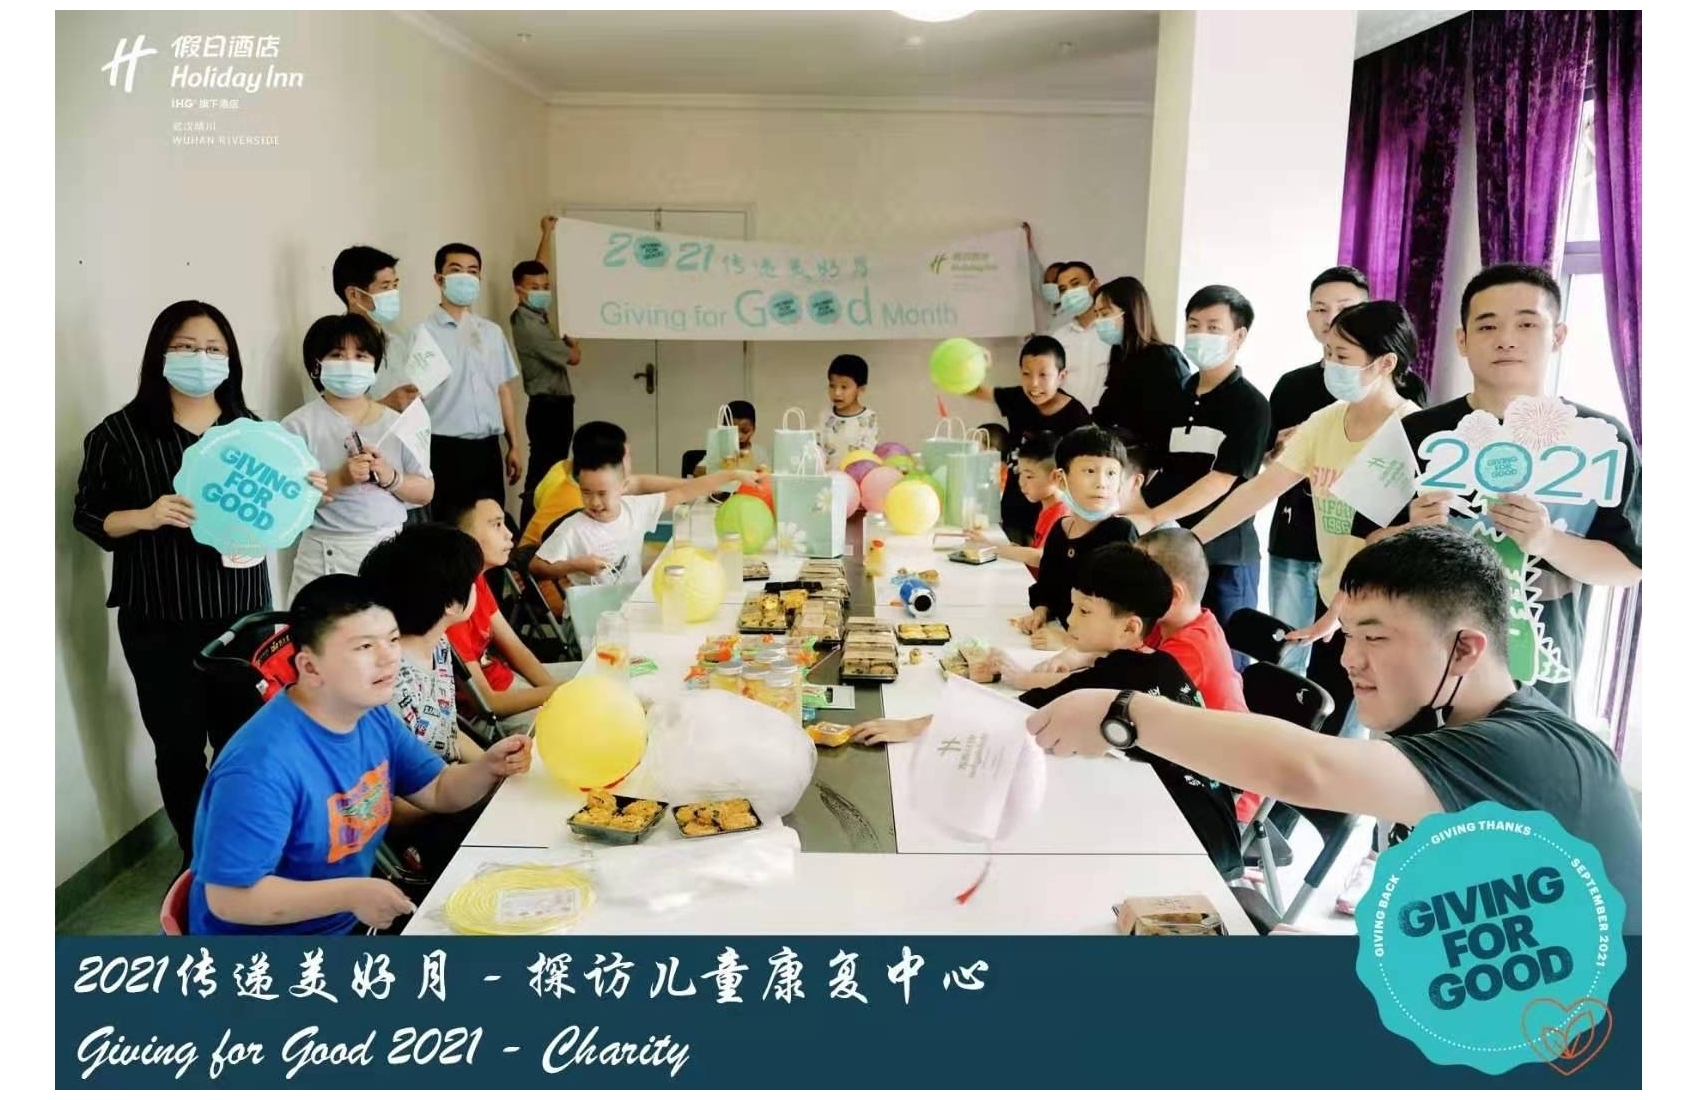 中國武漢晴川假日酒店 - 2021傳遞美好月 – 探訪兒童康服中心 (1)